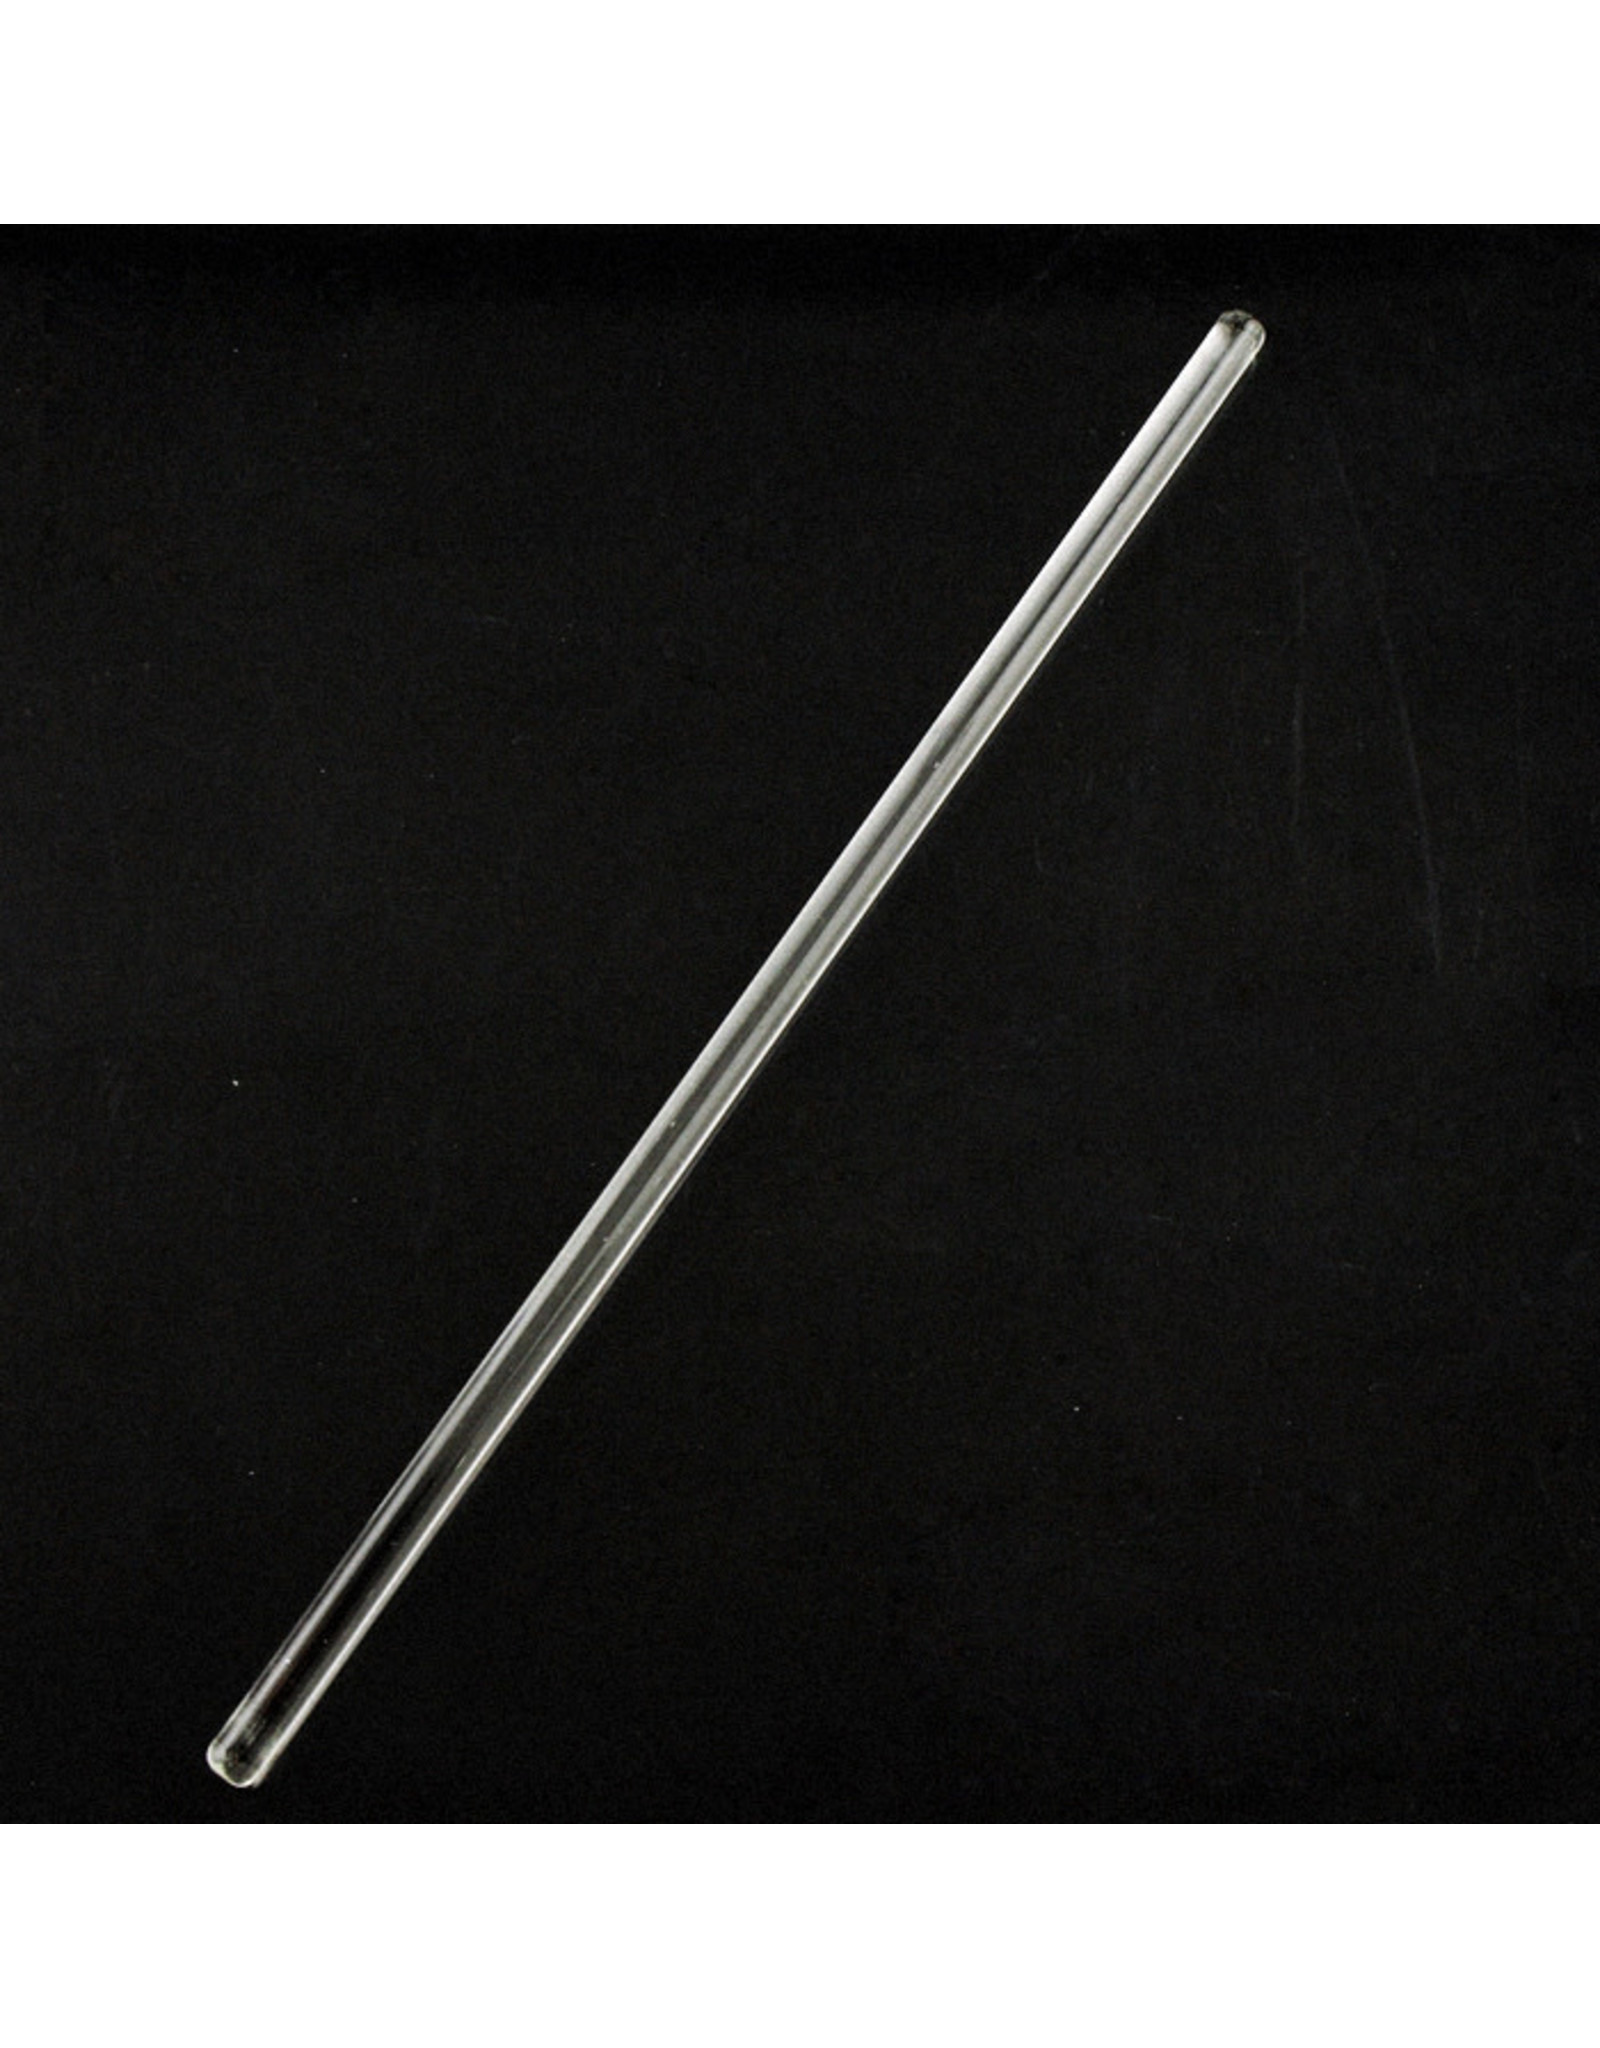 Glass Stir Rod